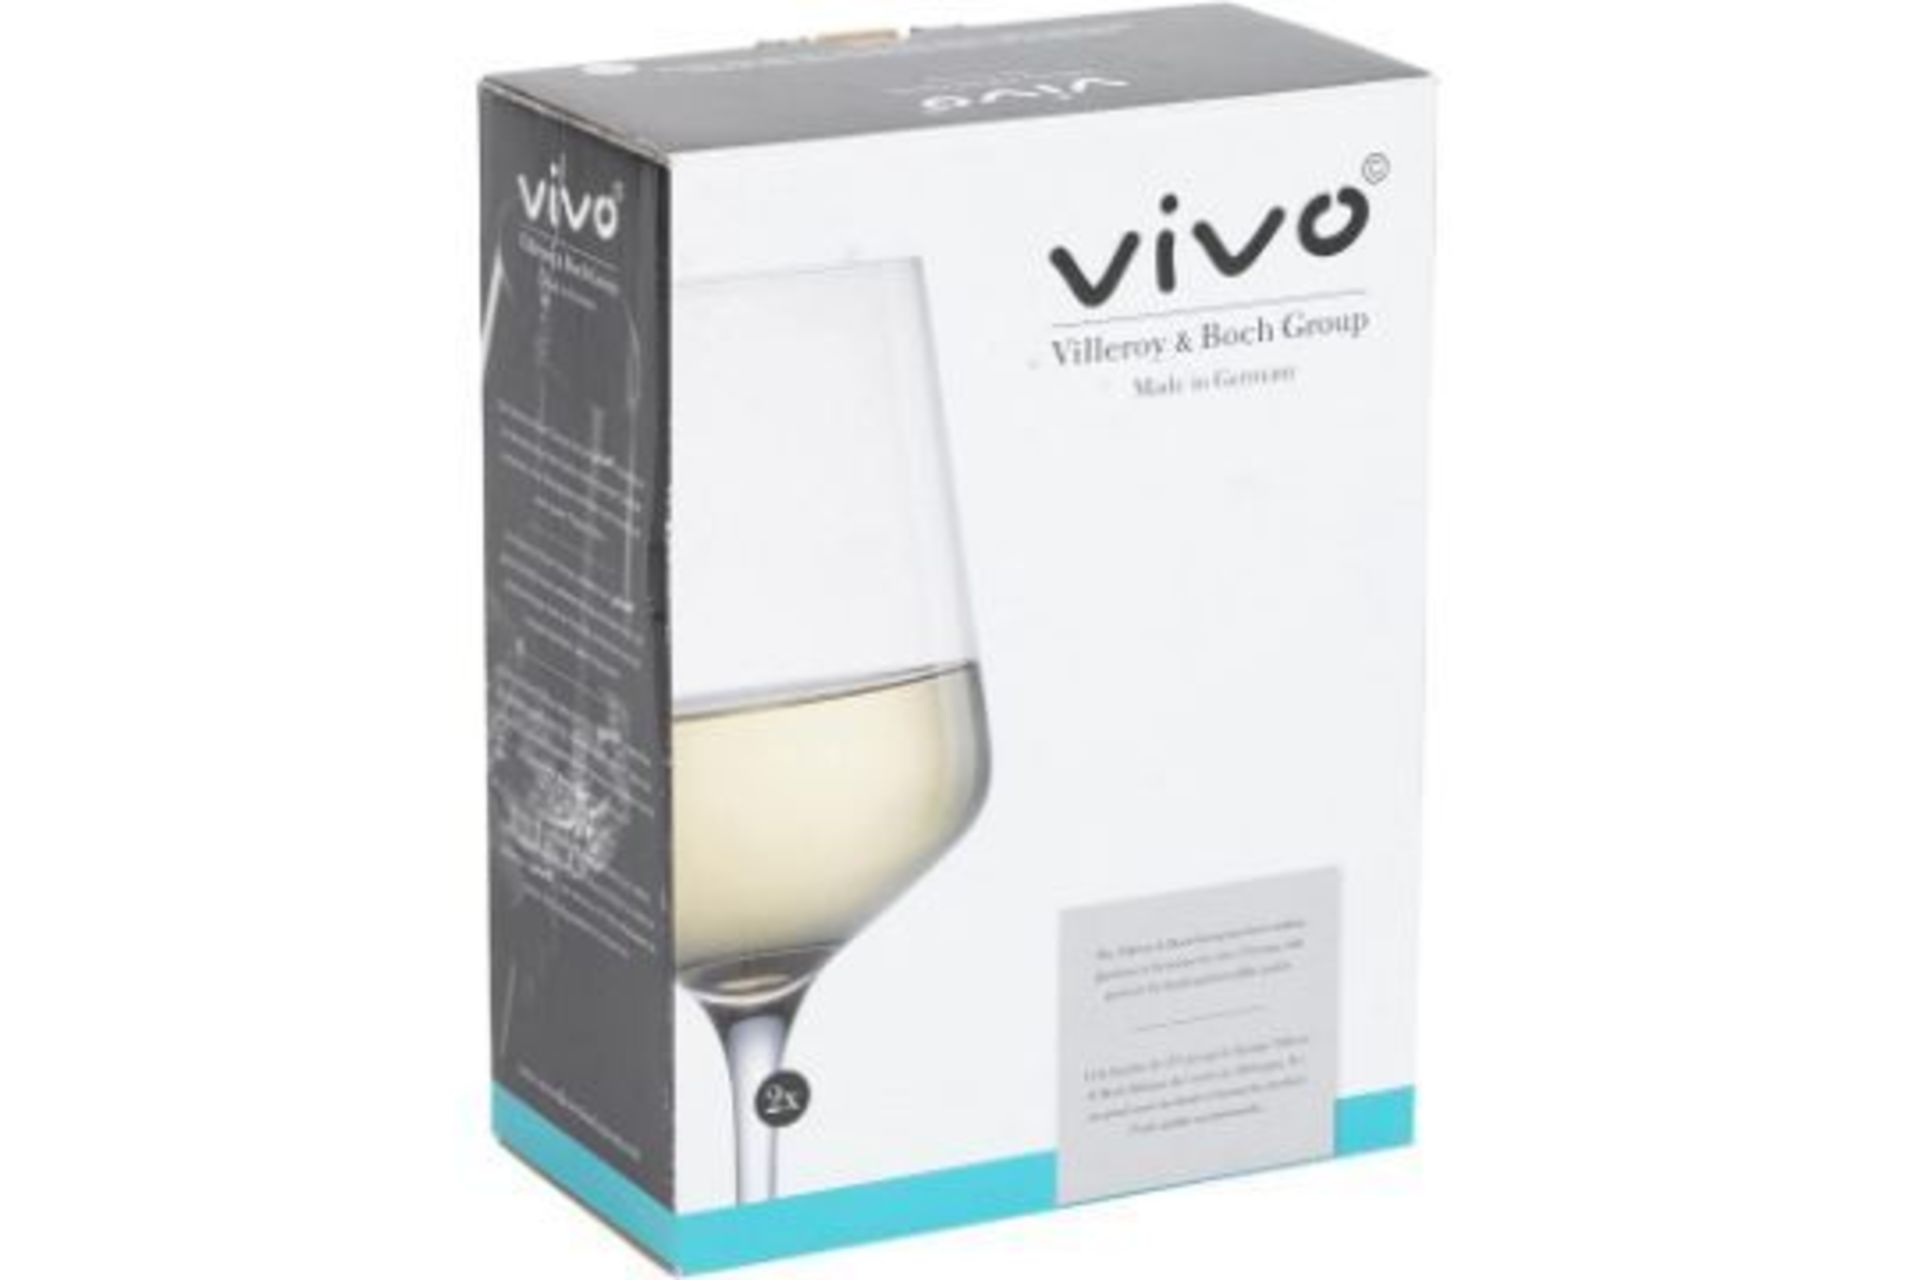 New Villeroy & Boch Set Of 2 White Wine Glasses - RRP £19.99.